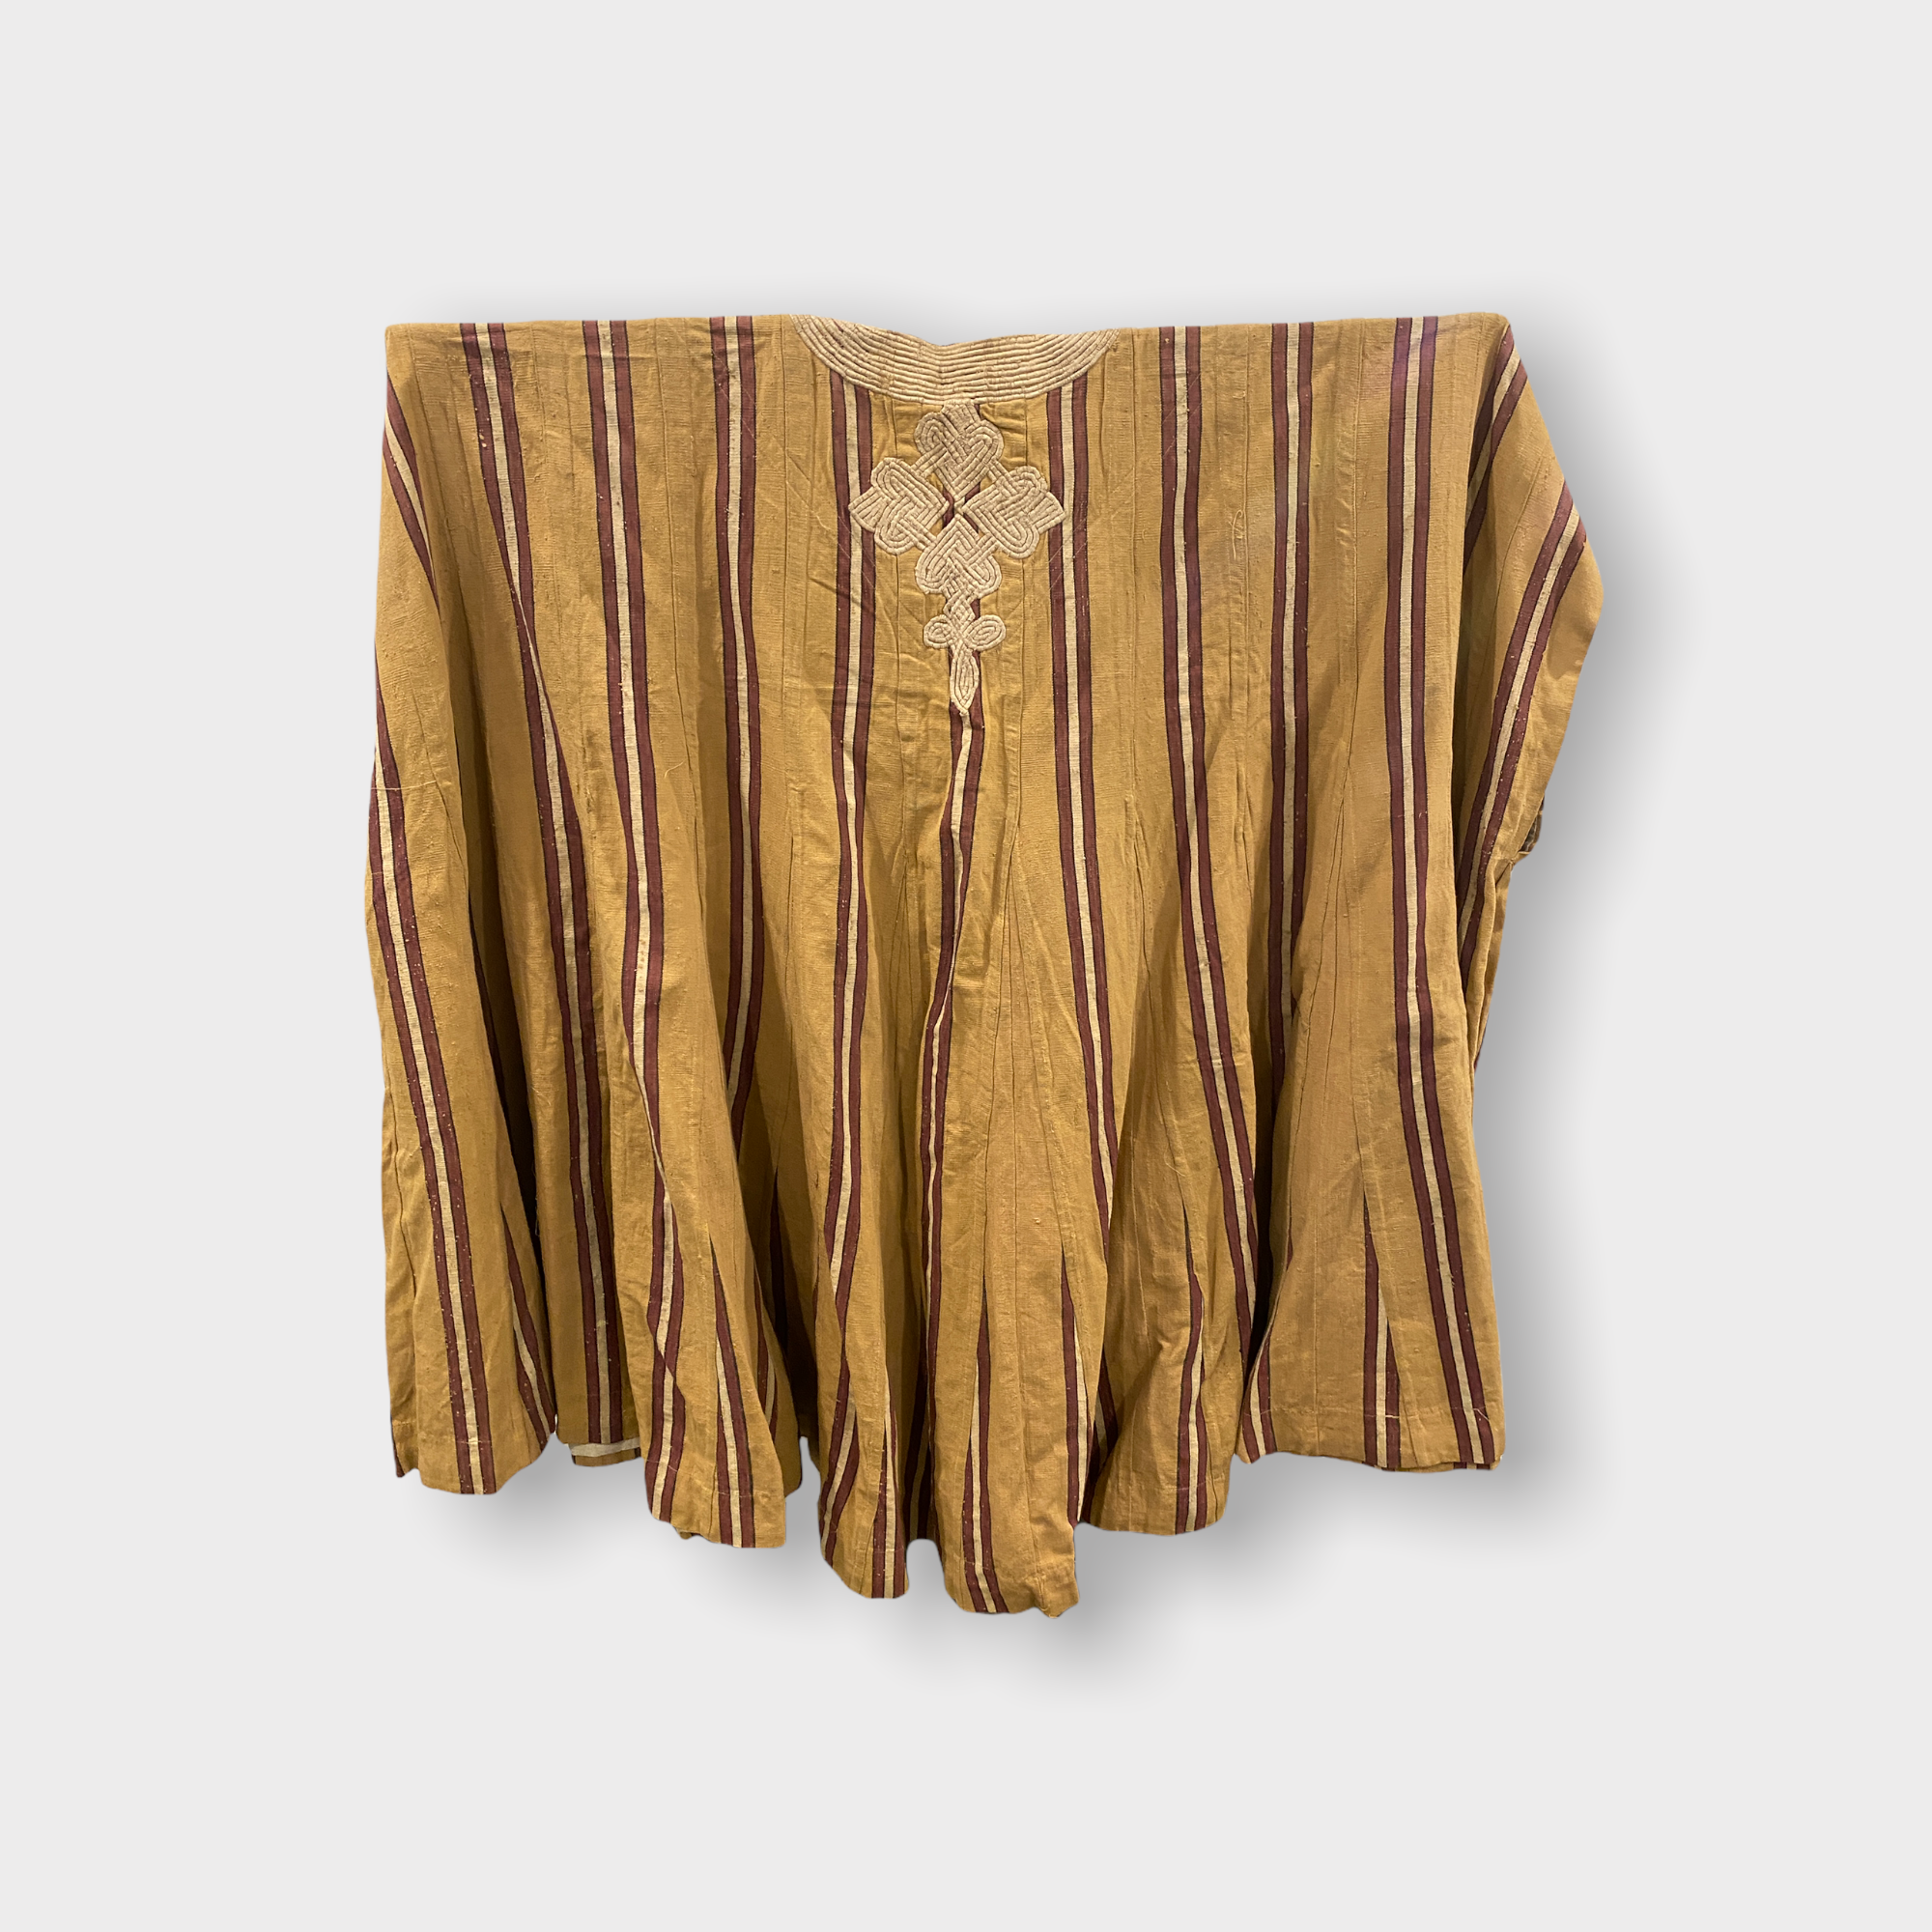 Boubou robe - Vintage garment - West Africa (14)